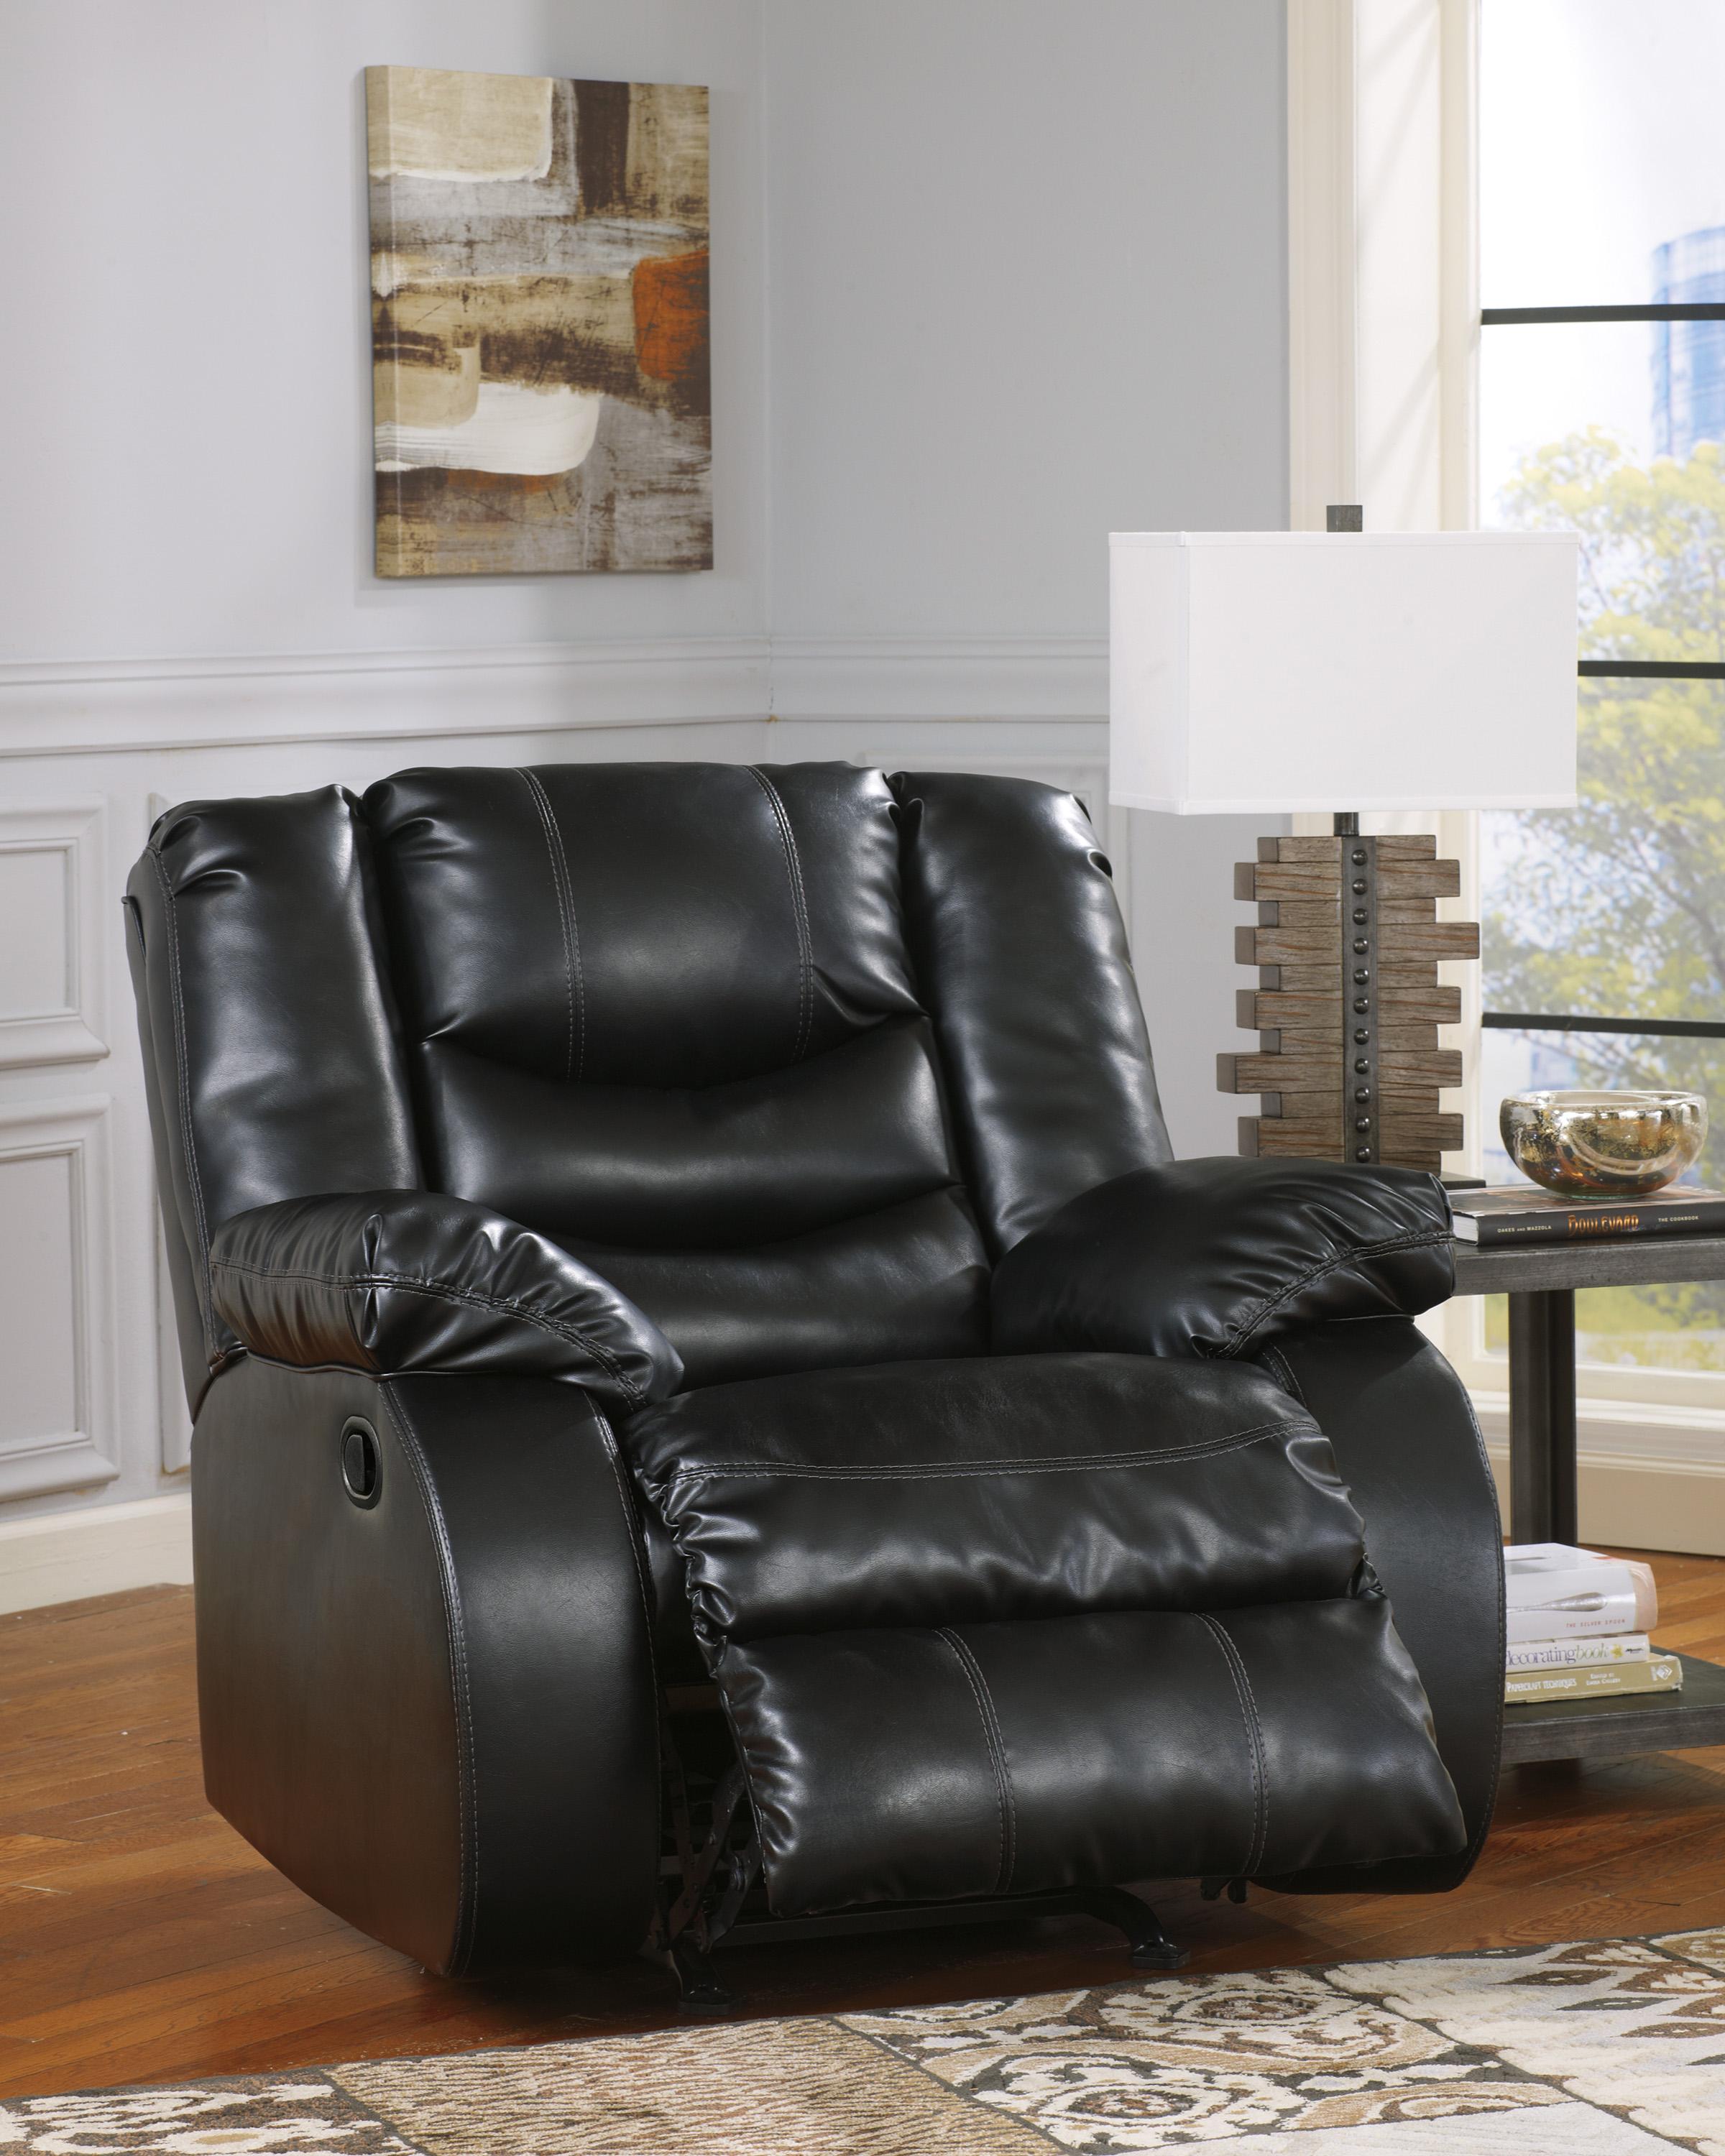 

    
 Order  Ashley Linebacker DuraBlend 3 Piece Living Room Set in Black 2395
